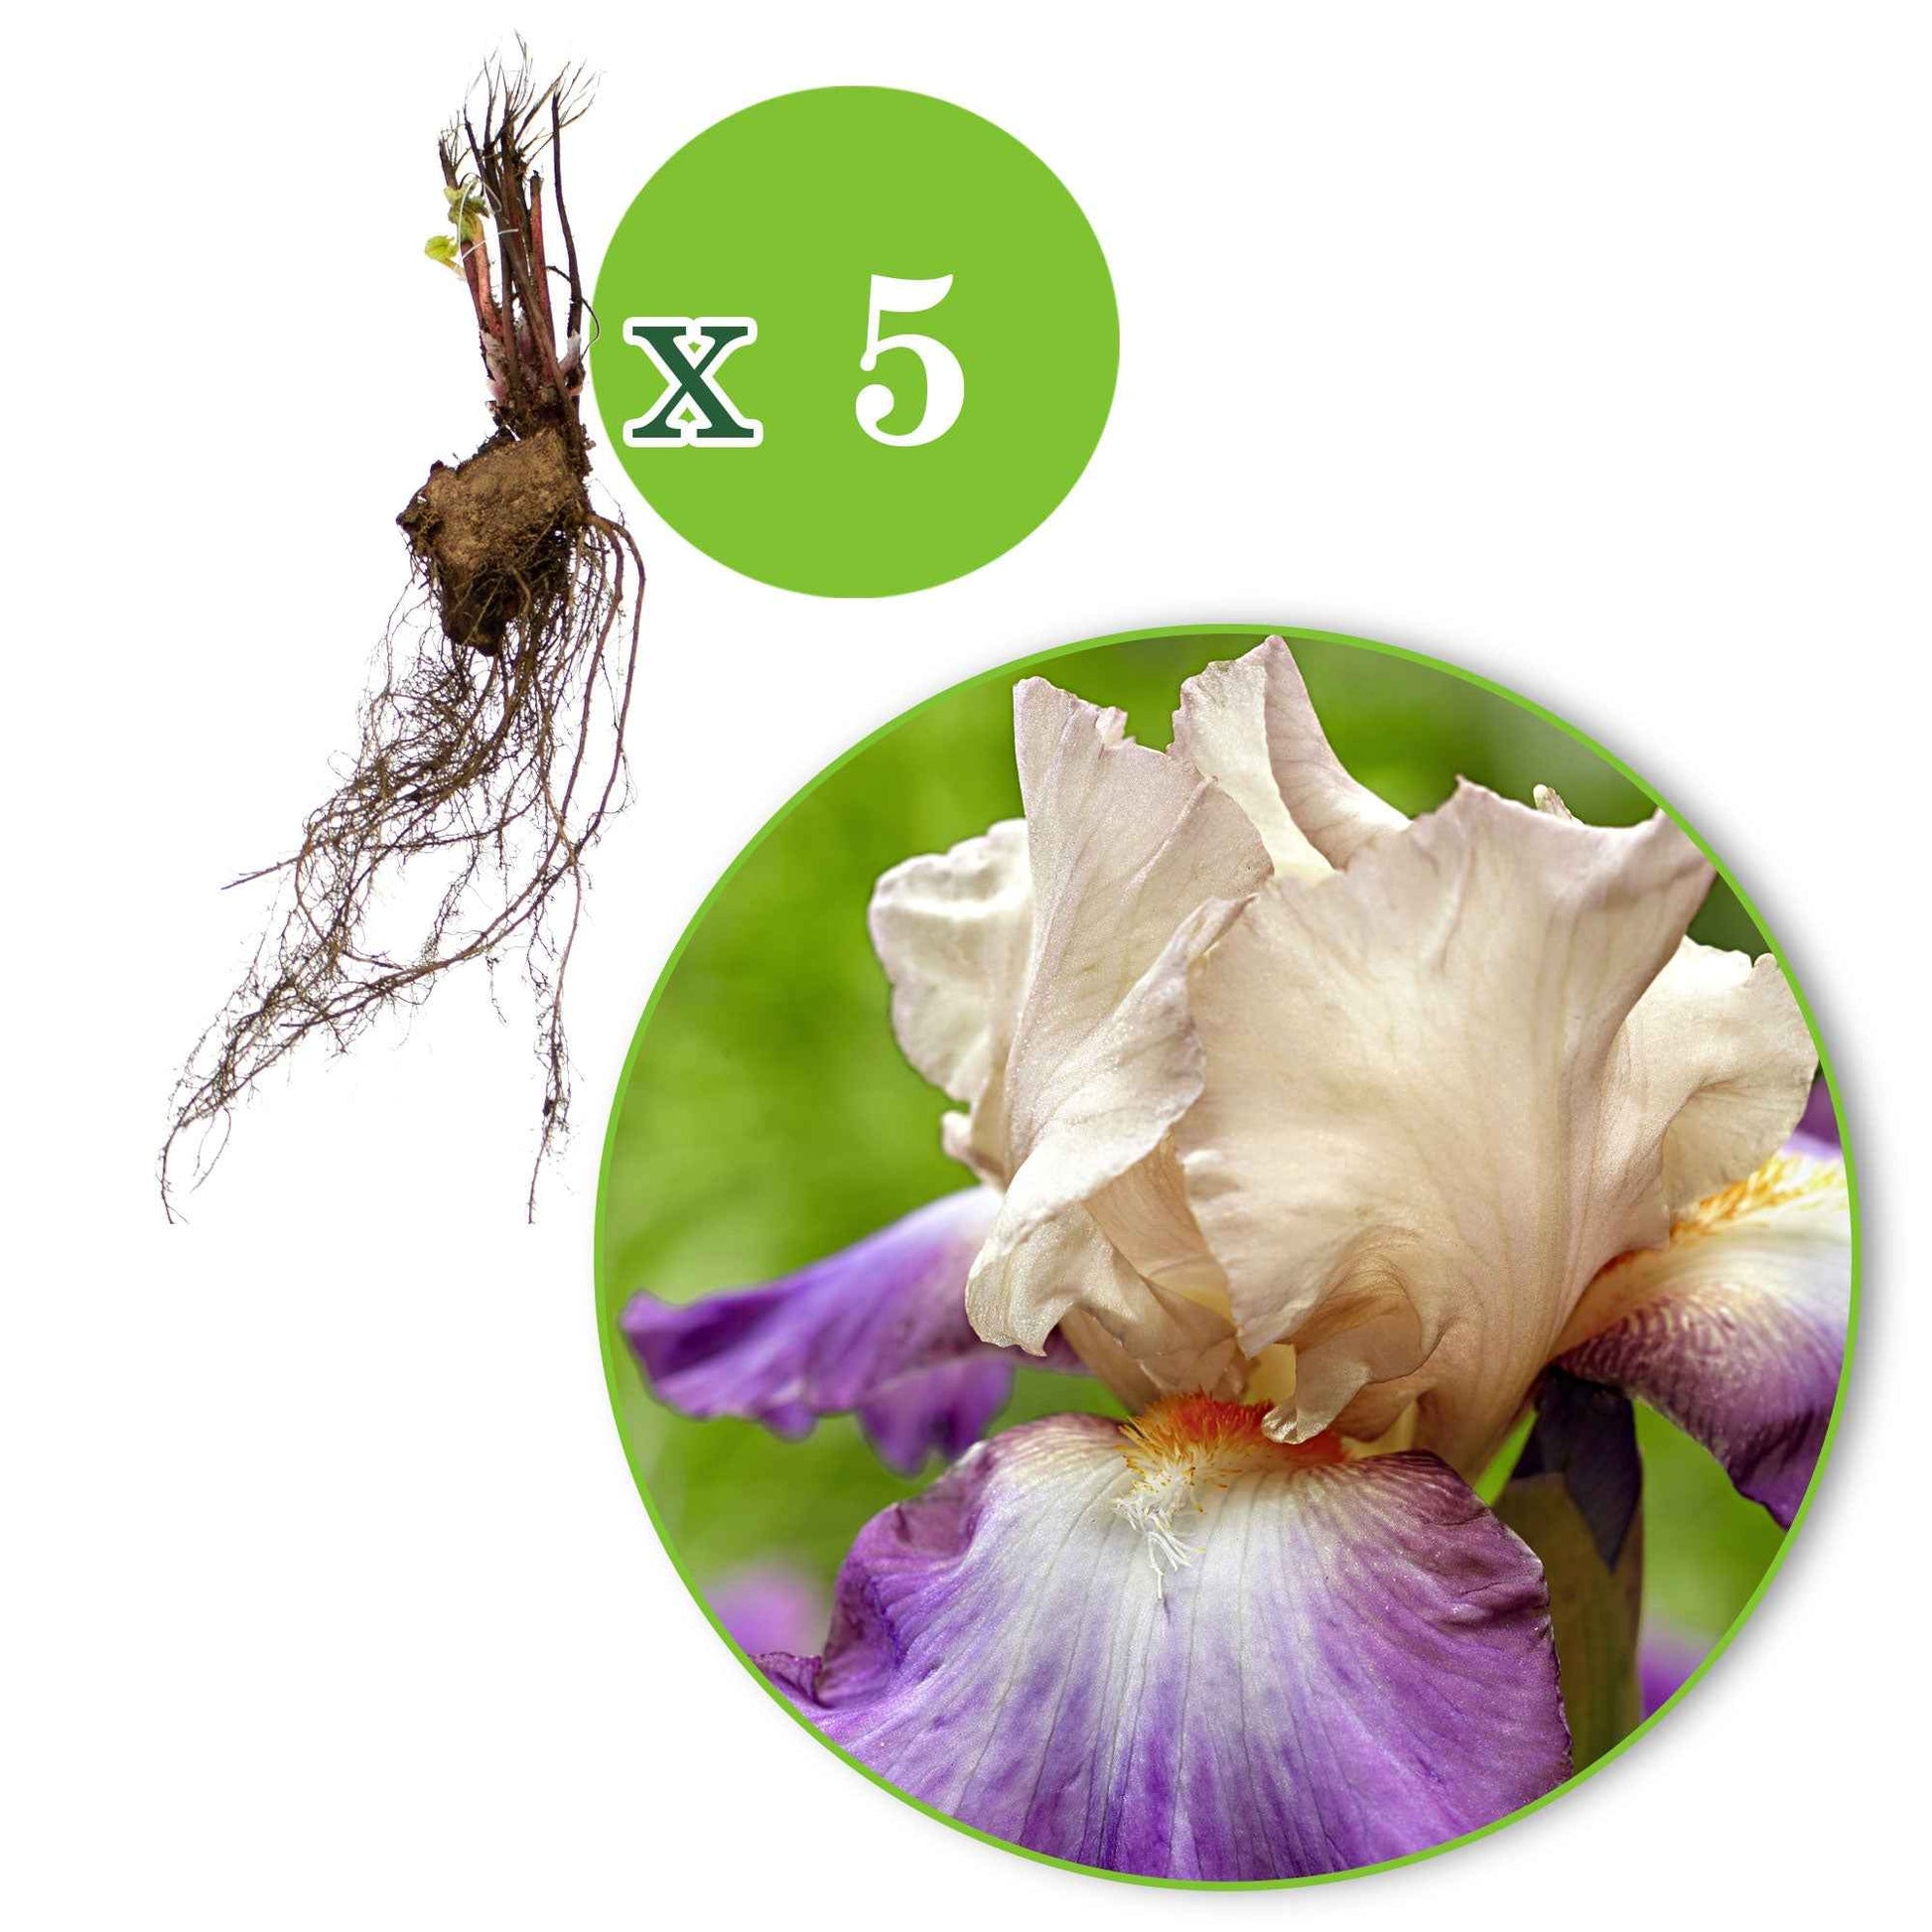 5x Winterharde geranium 'Kora' paars-wit - Bare rooted - Winterhard - Plant eigenschap